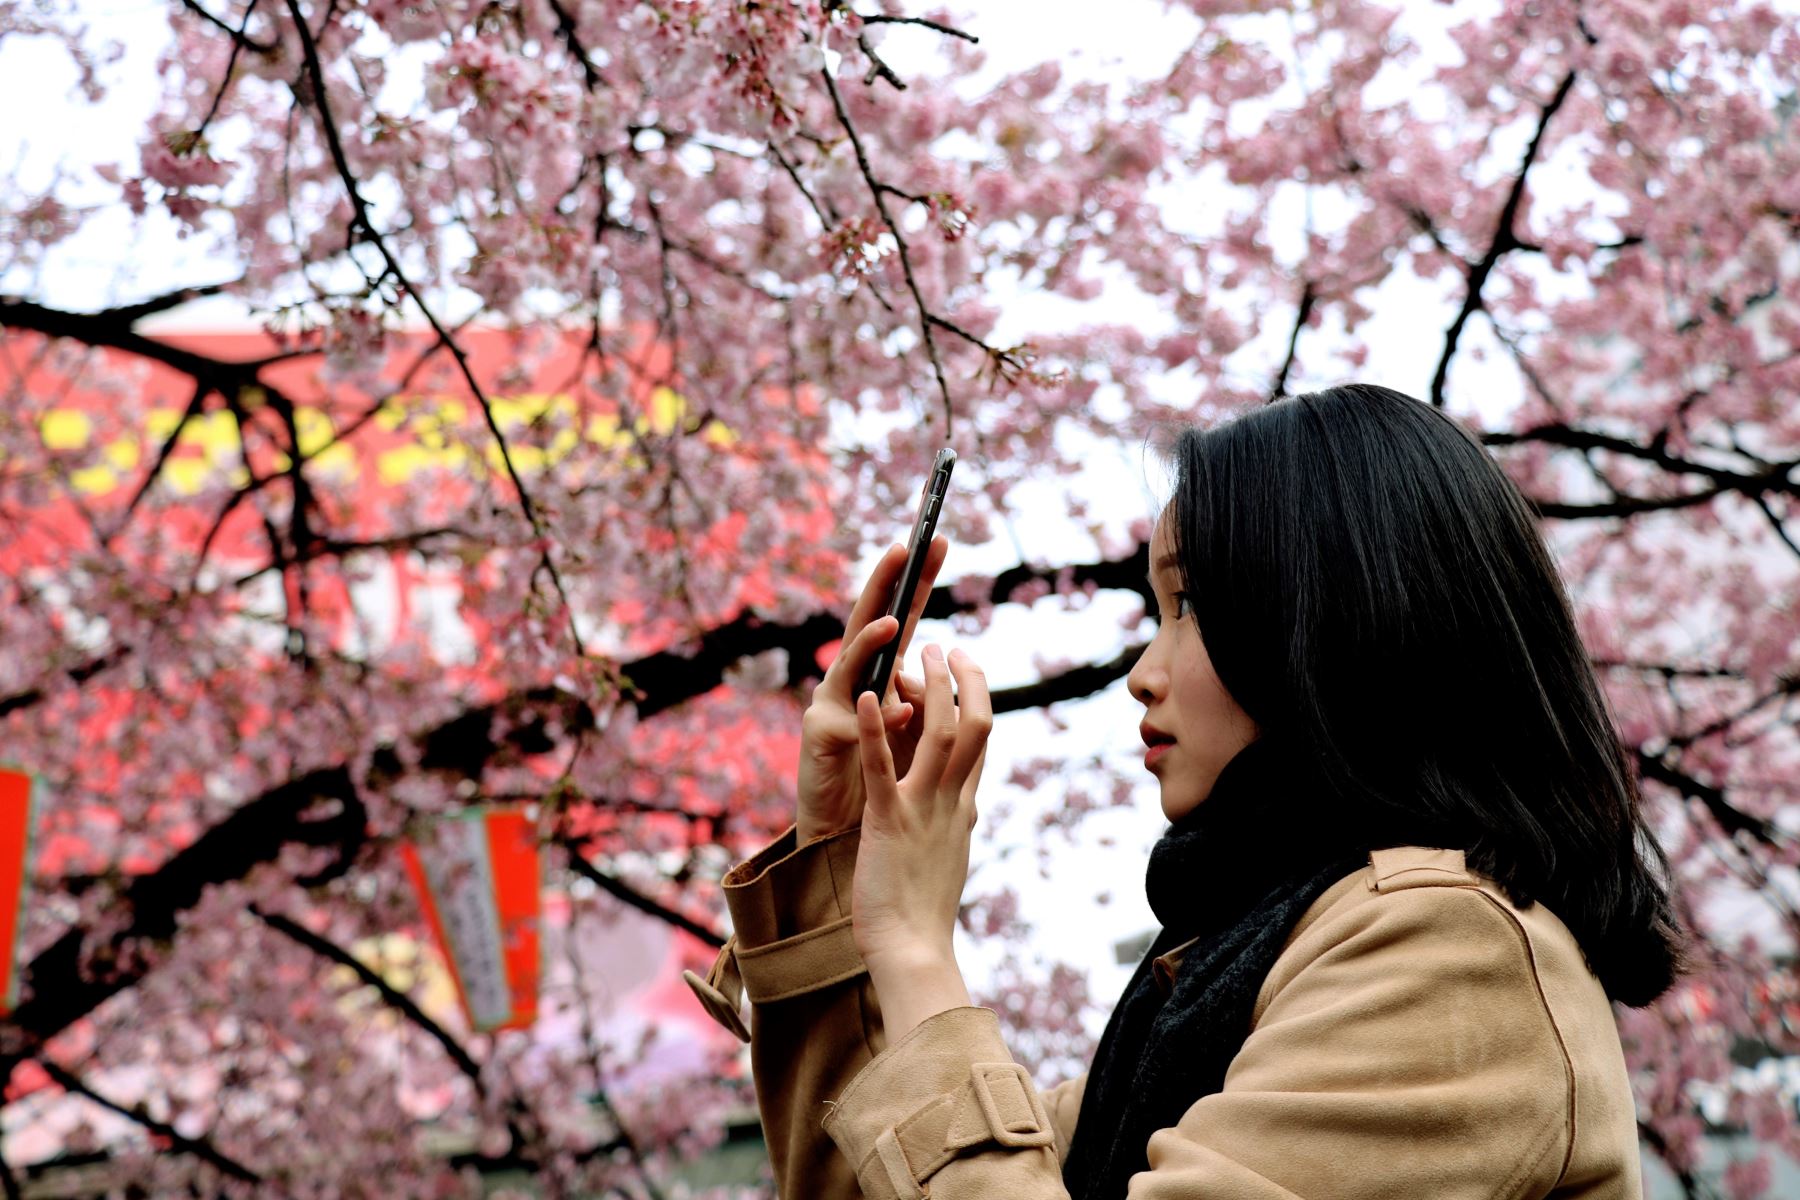 Tokiotas y turistas se arremolinan bajo el "okansakura", una de las variedades de cerezo que florecen más pronto en Japón. Foto: EFE